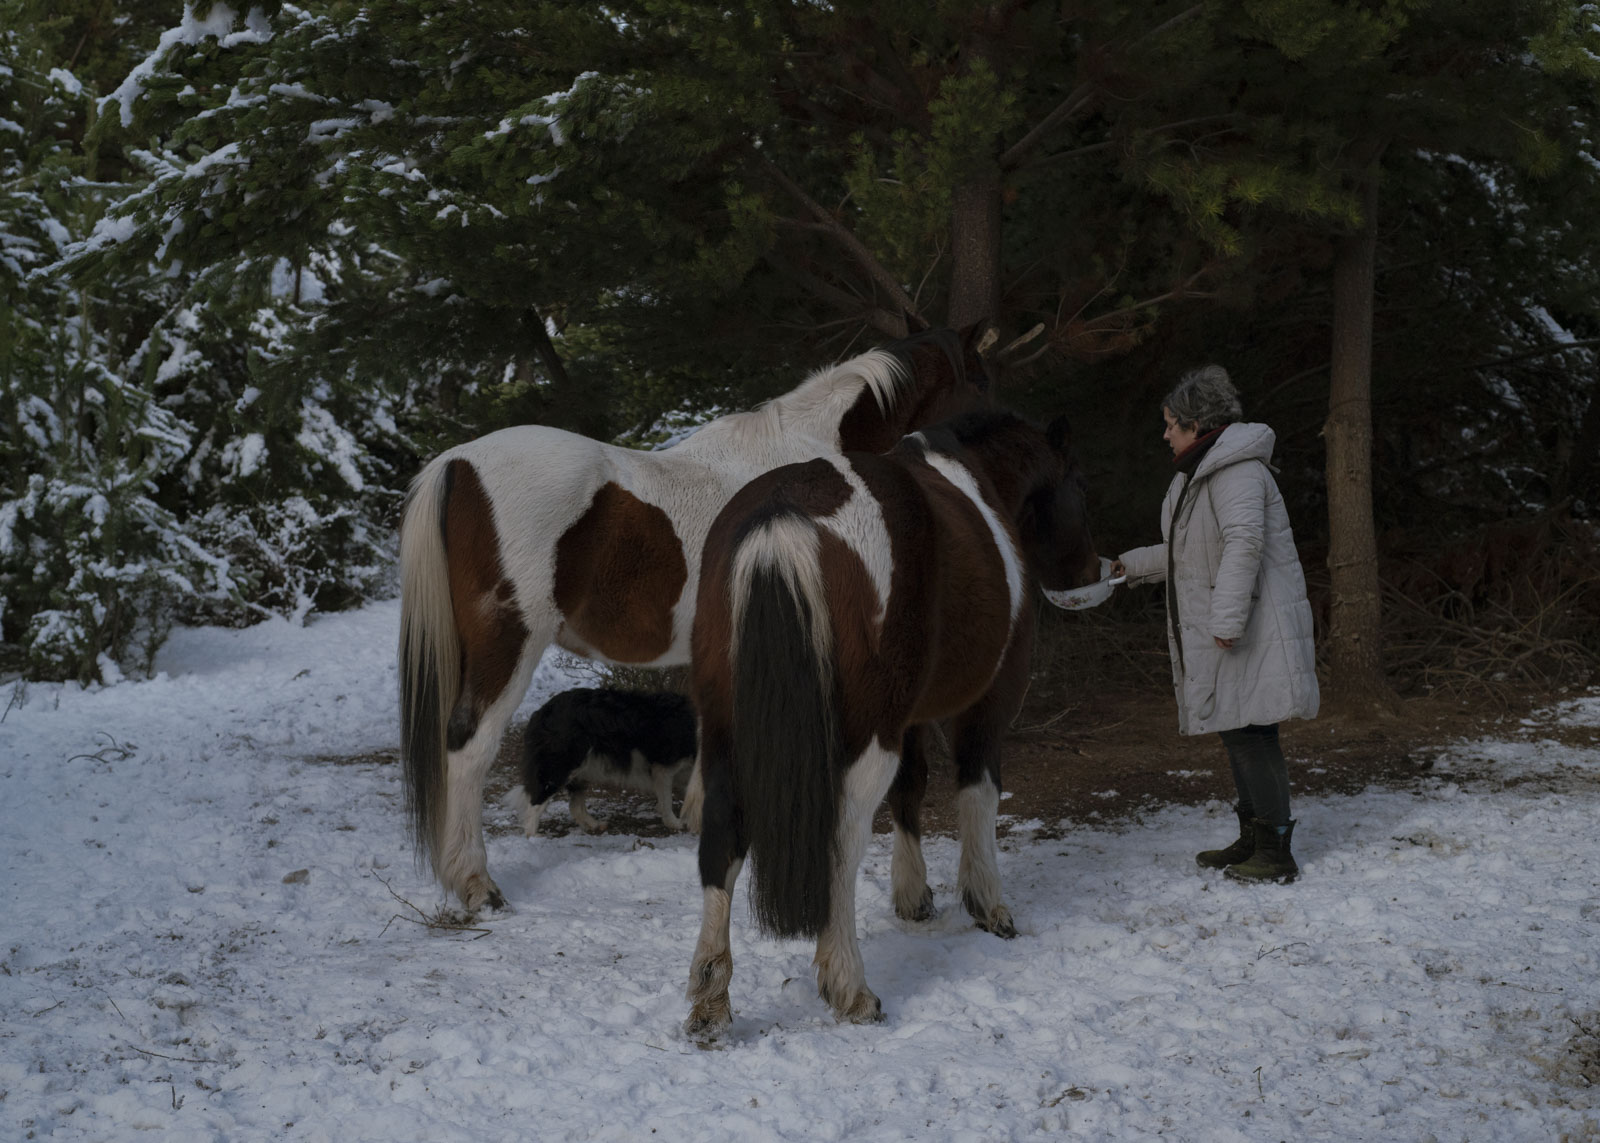 Yo bebo leche y agua. Miriam Chible Contreras (58) füttert ihre Pferde mit Graspellets. Wetterextreme, die durch den Klimawandel weiter verschärft werden, bringen die Bauern an ihre Grenzen. Der Schnee bedeckt den Grasboden, Hautnahrungsquelle der Tiere, fast vollständig. 23.7.2022, Puerto Guadal, Chile. © 2022 Stella Meyer und Sarah Schneider.